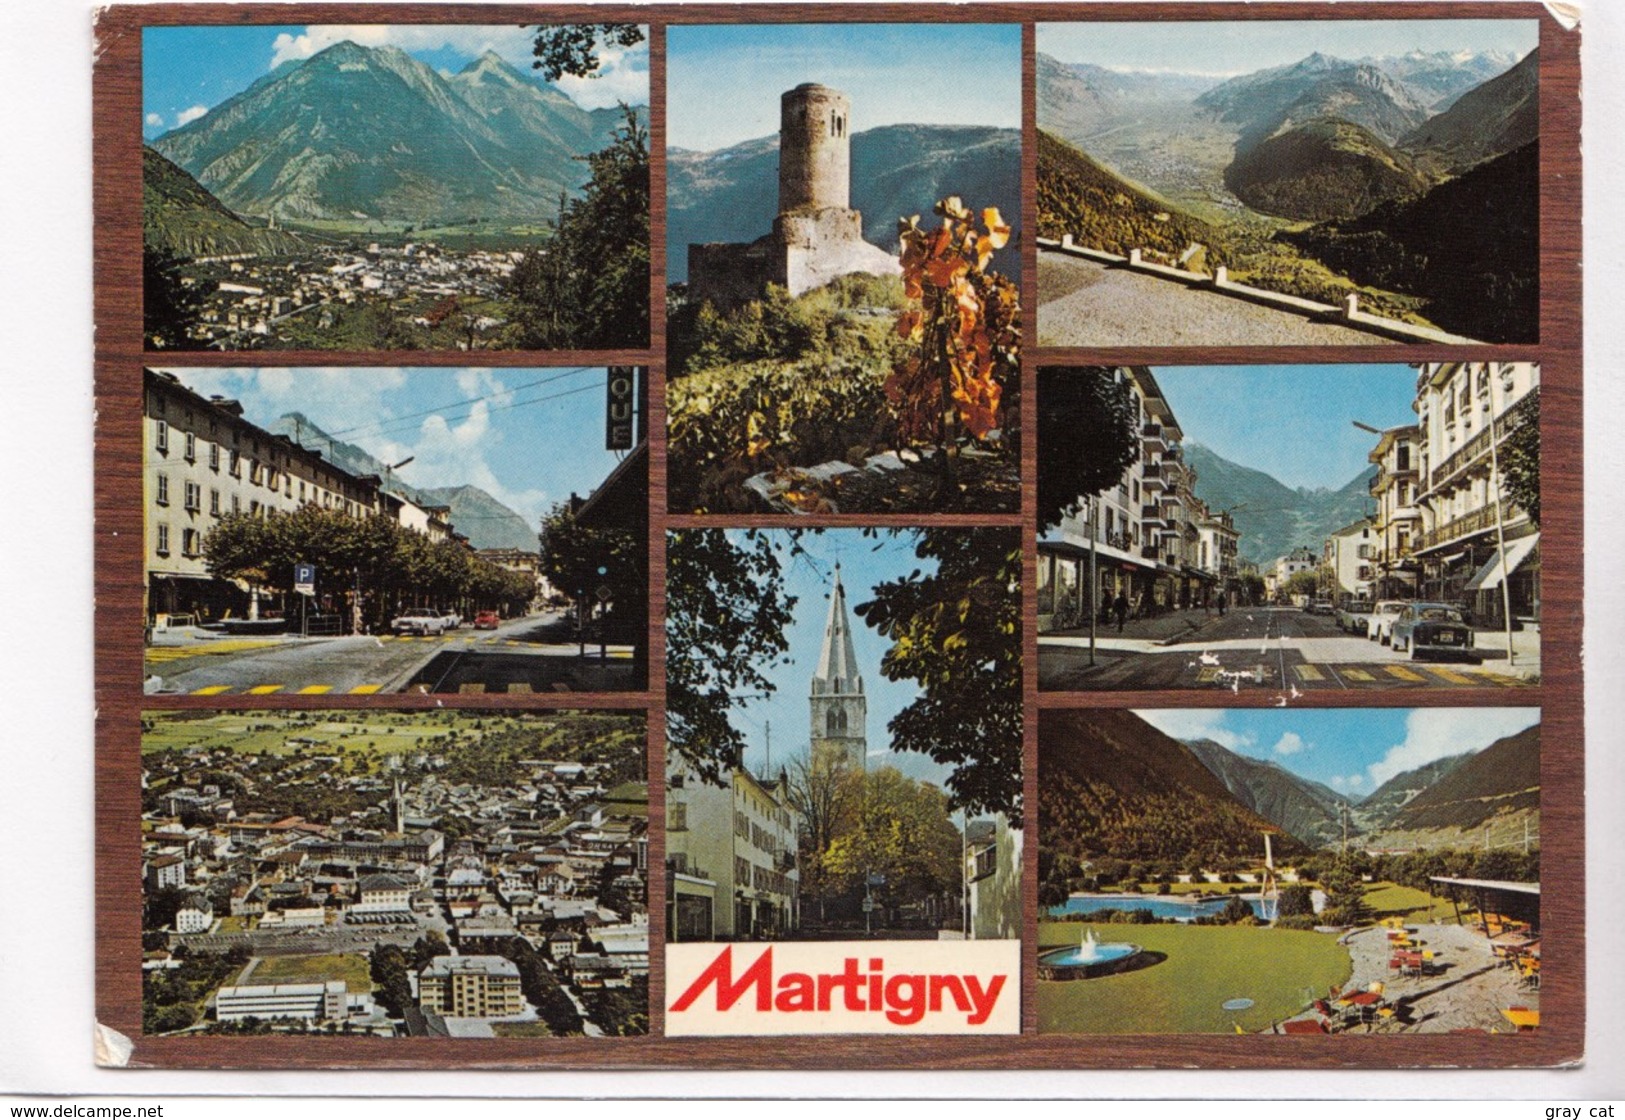 Martigny, Valais, Switzerland, 1974 Used Postcard [22351] - Martigny